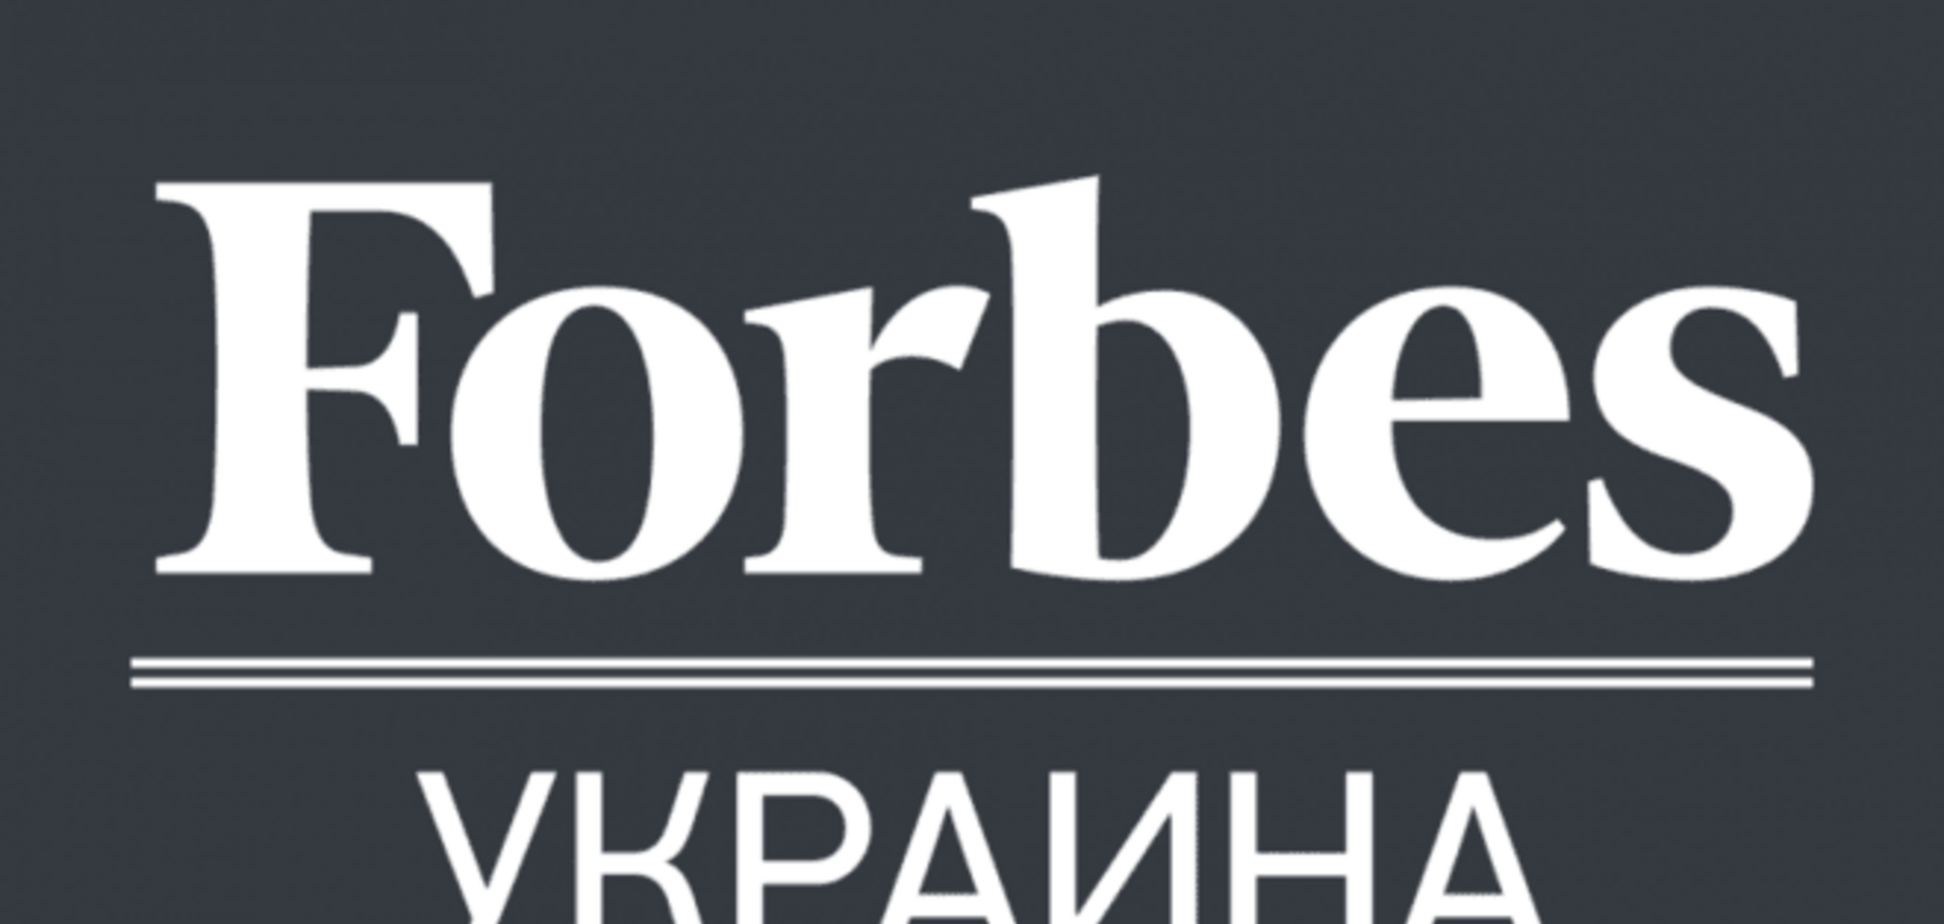 Теперь все: американский Forbes лишил украинское издание лицензии